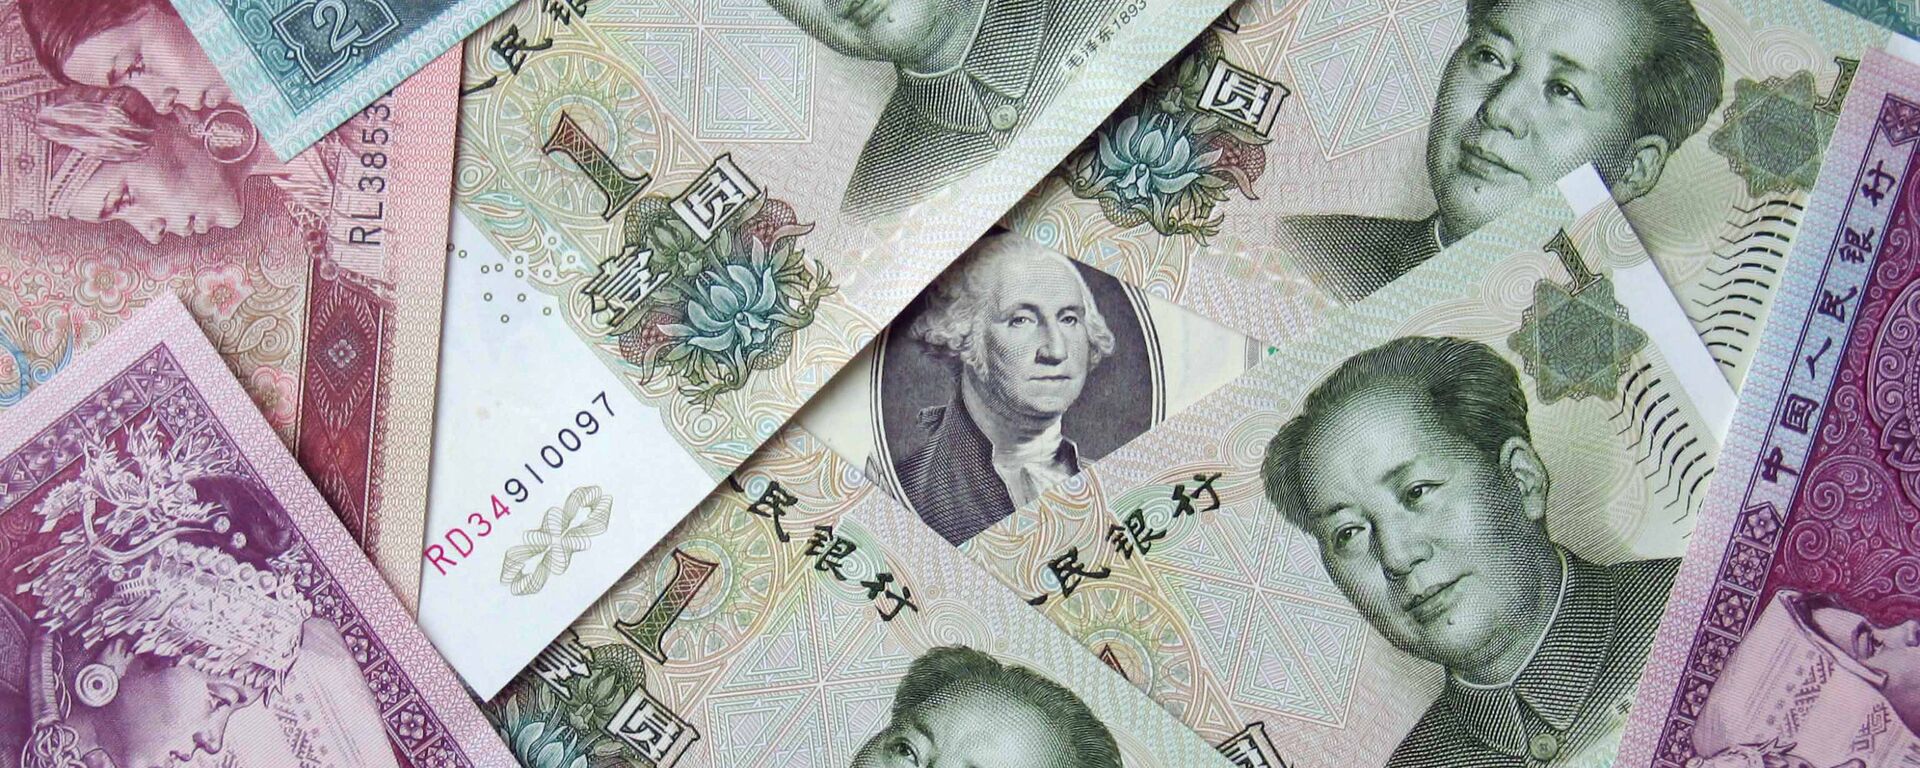 Китайские юани и 100 долларов, архивное фото - Sputnik Беларусь, 1920, 25.08.2020